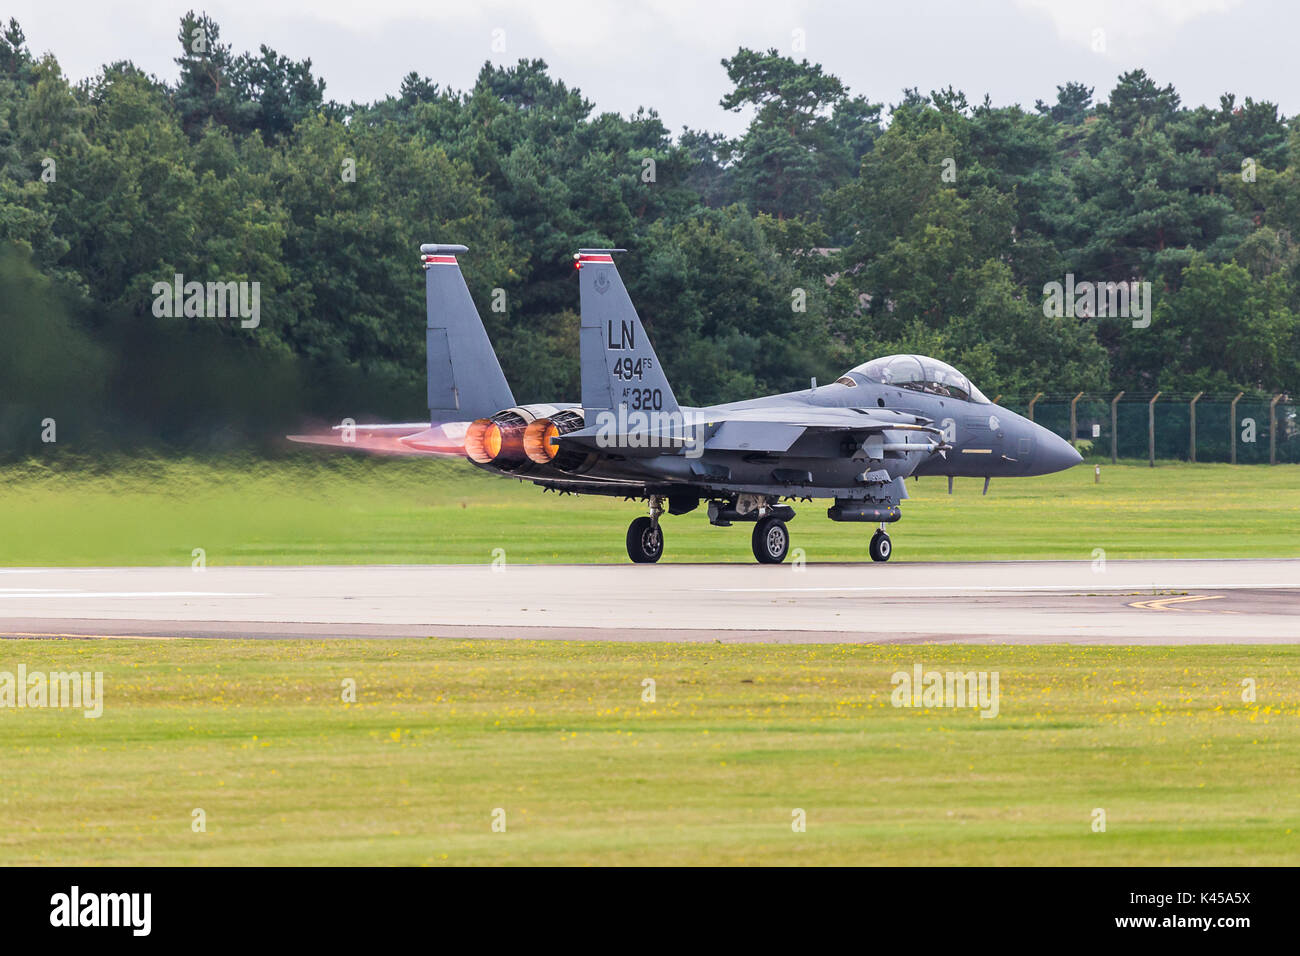 Ein USAF F-15 E Strike Eagle von der 494th Fighter Squadron gilt aufwärmen, wie es das RAF Lakenheath in Suffolk auf einem Training sortie. Stockfoto